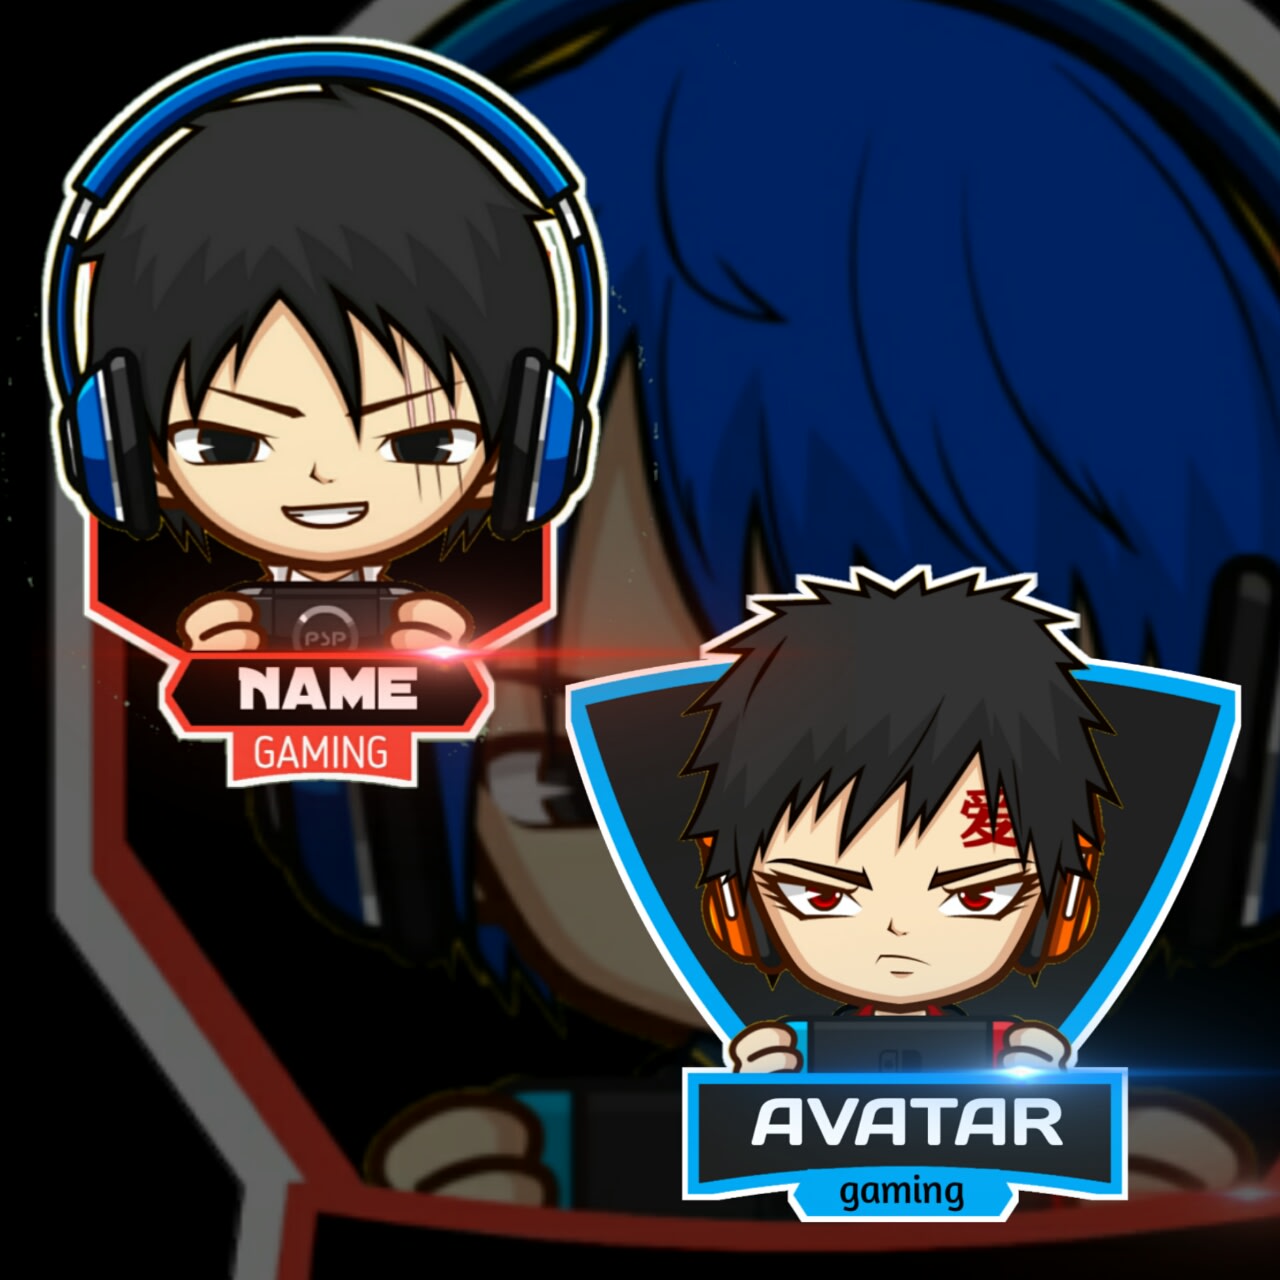 Tạo hình avatar nhân vật game hoạt hình và logo maskot sẽ là sở thích mới của tất cả các fan anime và game. Với hệ thống phông chữ, màu sắc và hiệu ứng đẹp mắt, bạn có thể thiết kế bất kỳ avatar hoạt hình nào mà bạn muốn. Hãy bắt đầu thử và khám phá những điều mới mẻ ngay hôm nay!